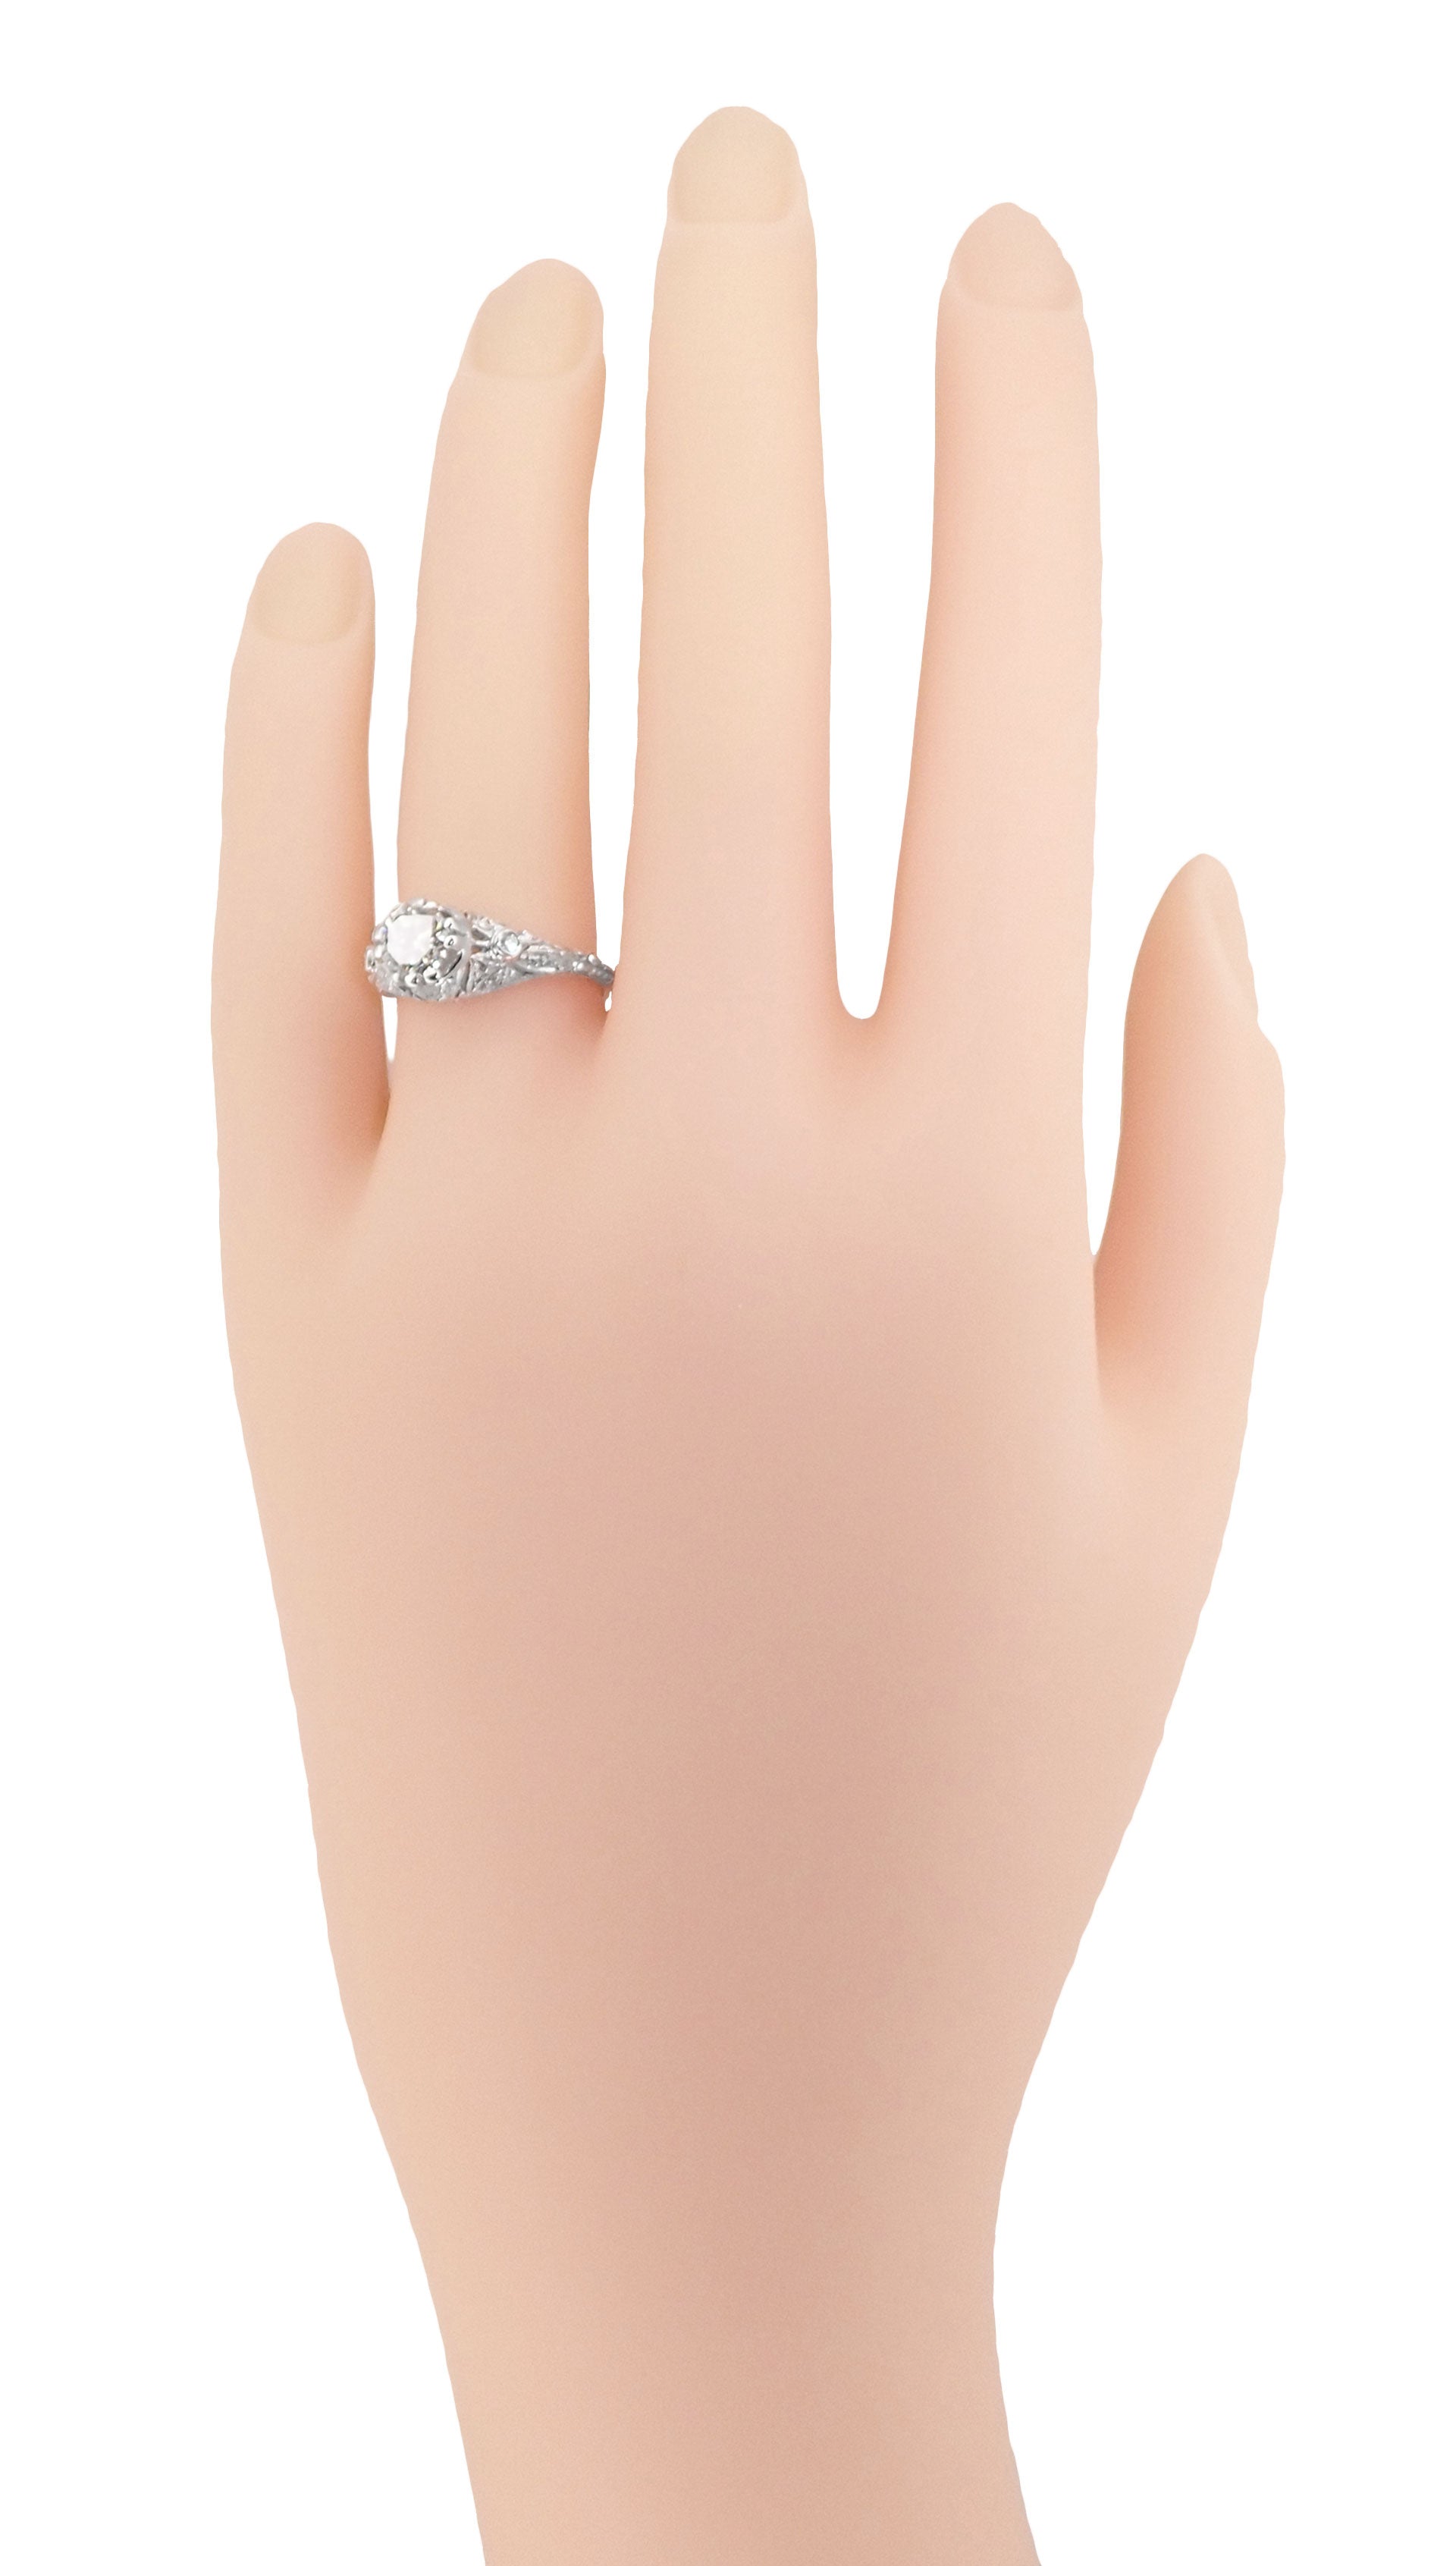 Edwardian Antique Style 1 Carat Diamond T.W. Filigree Engagement Ring in 18 Karat White Gold - Item: R6791D - Image: 5